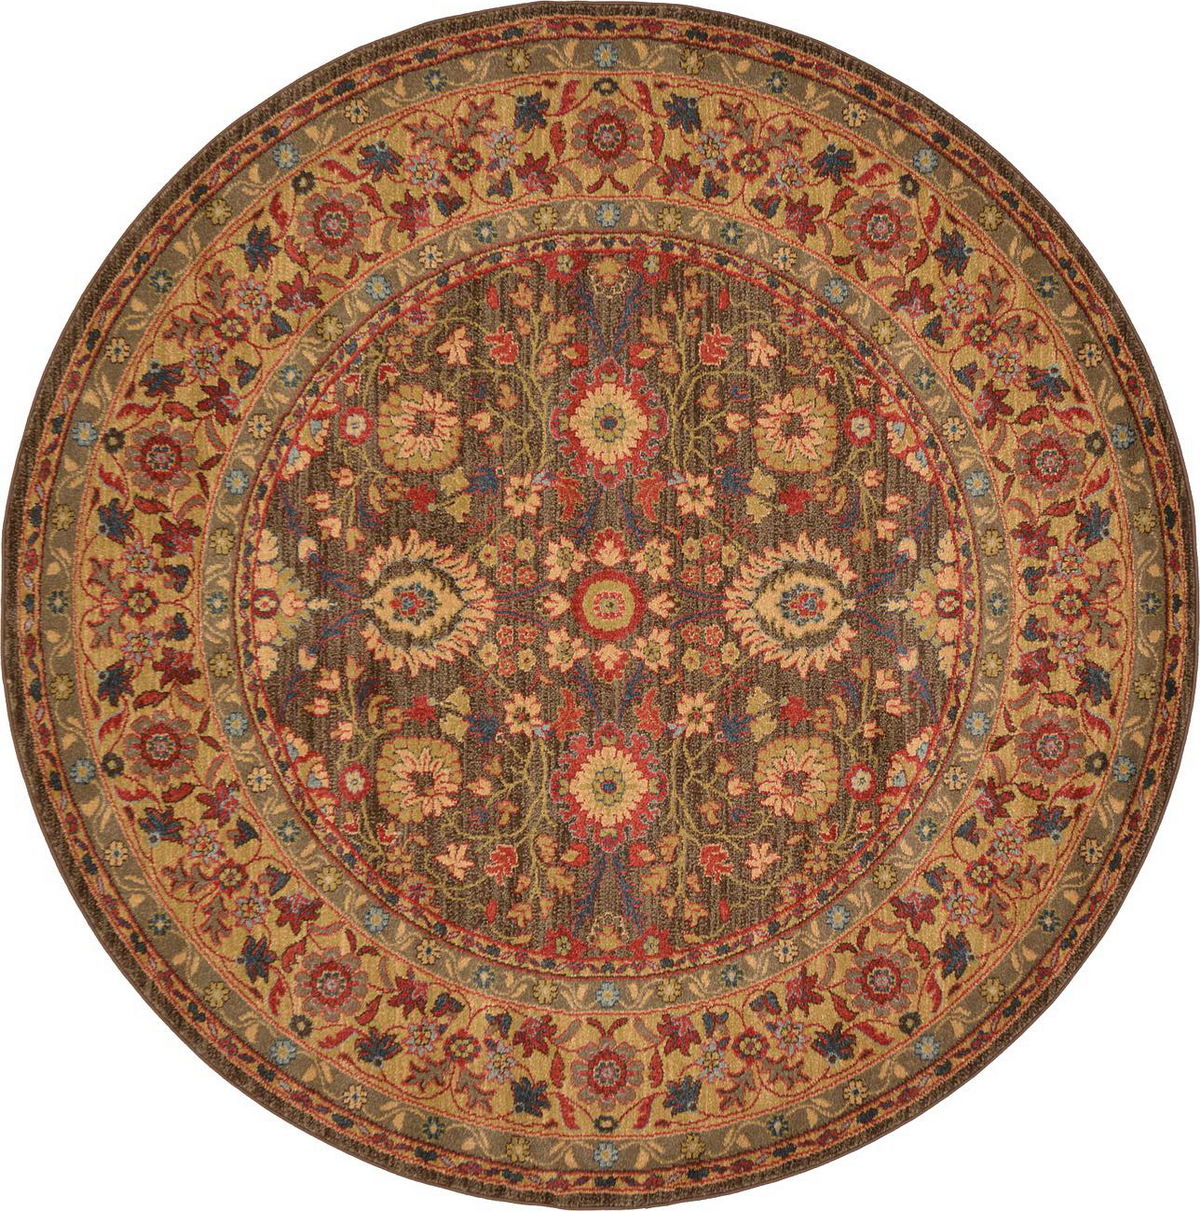 古典经典地毯ID10168